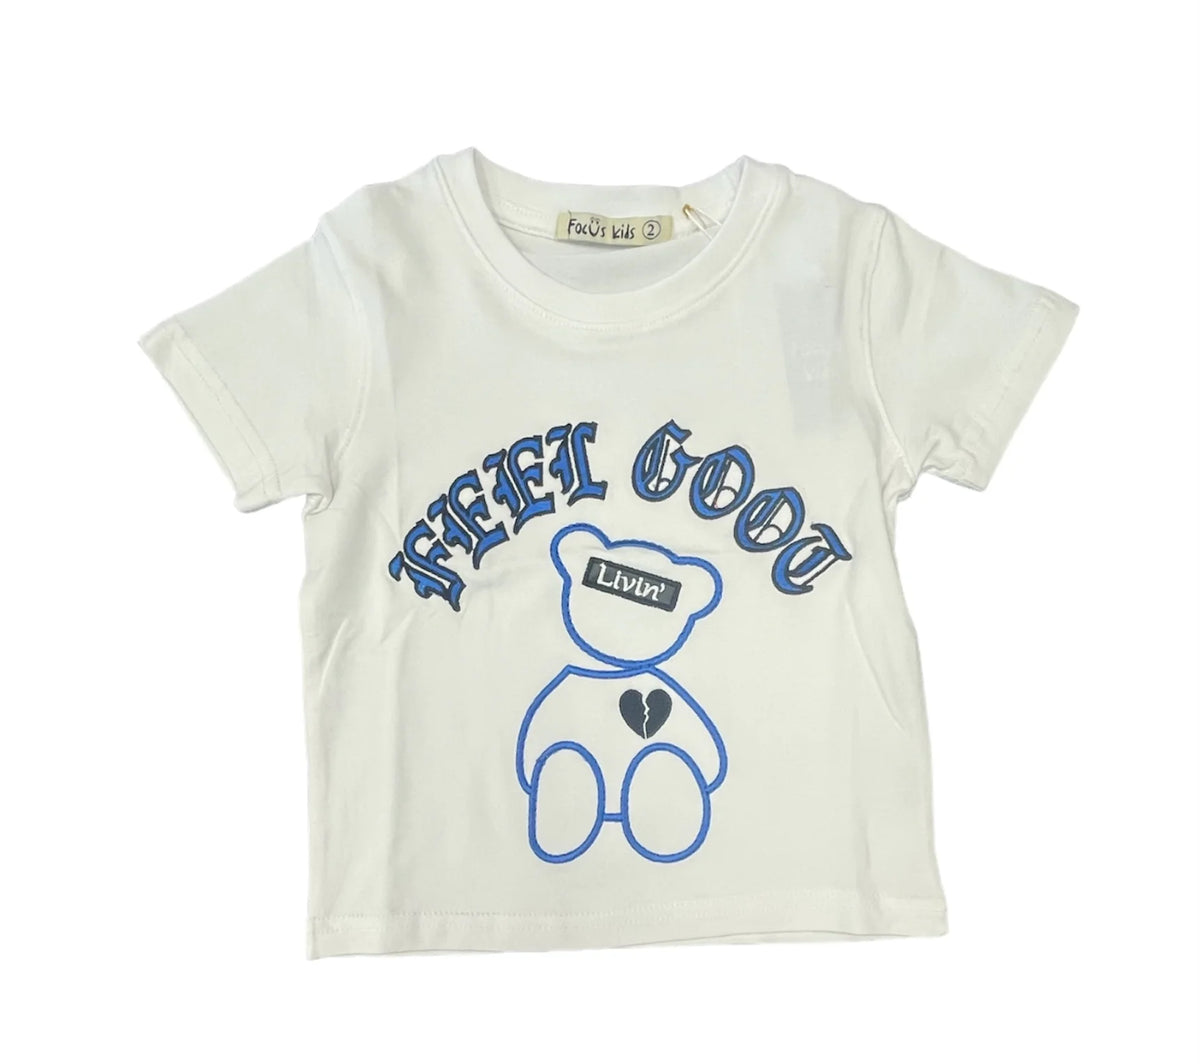 Kids 'Feel Good' T-Shirt - White/Light Blue